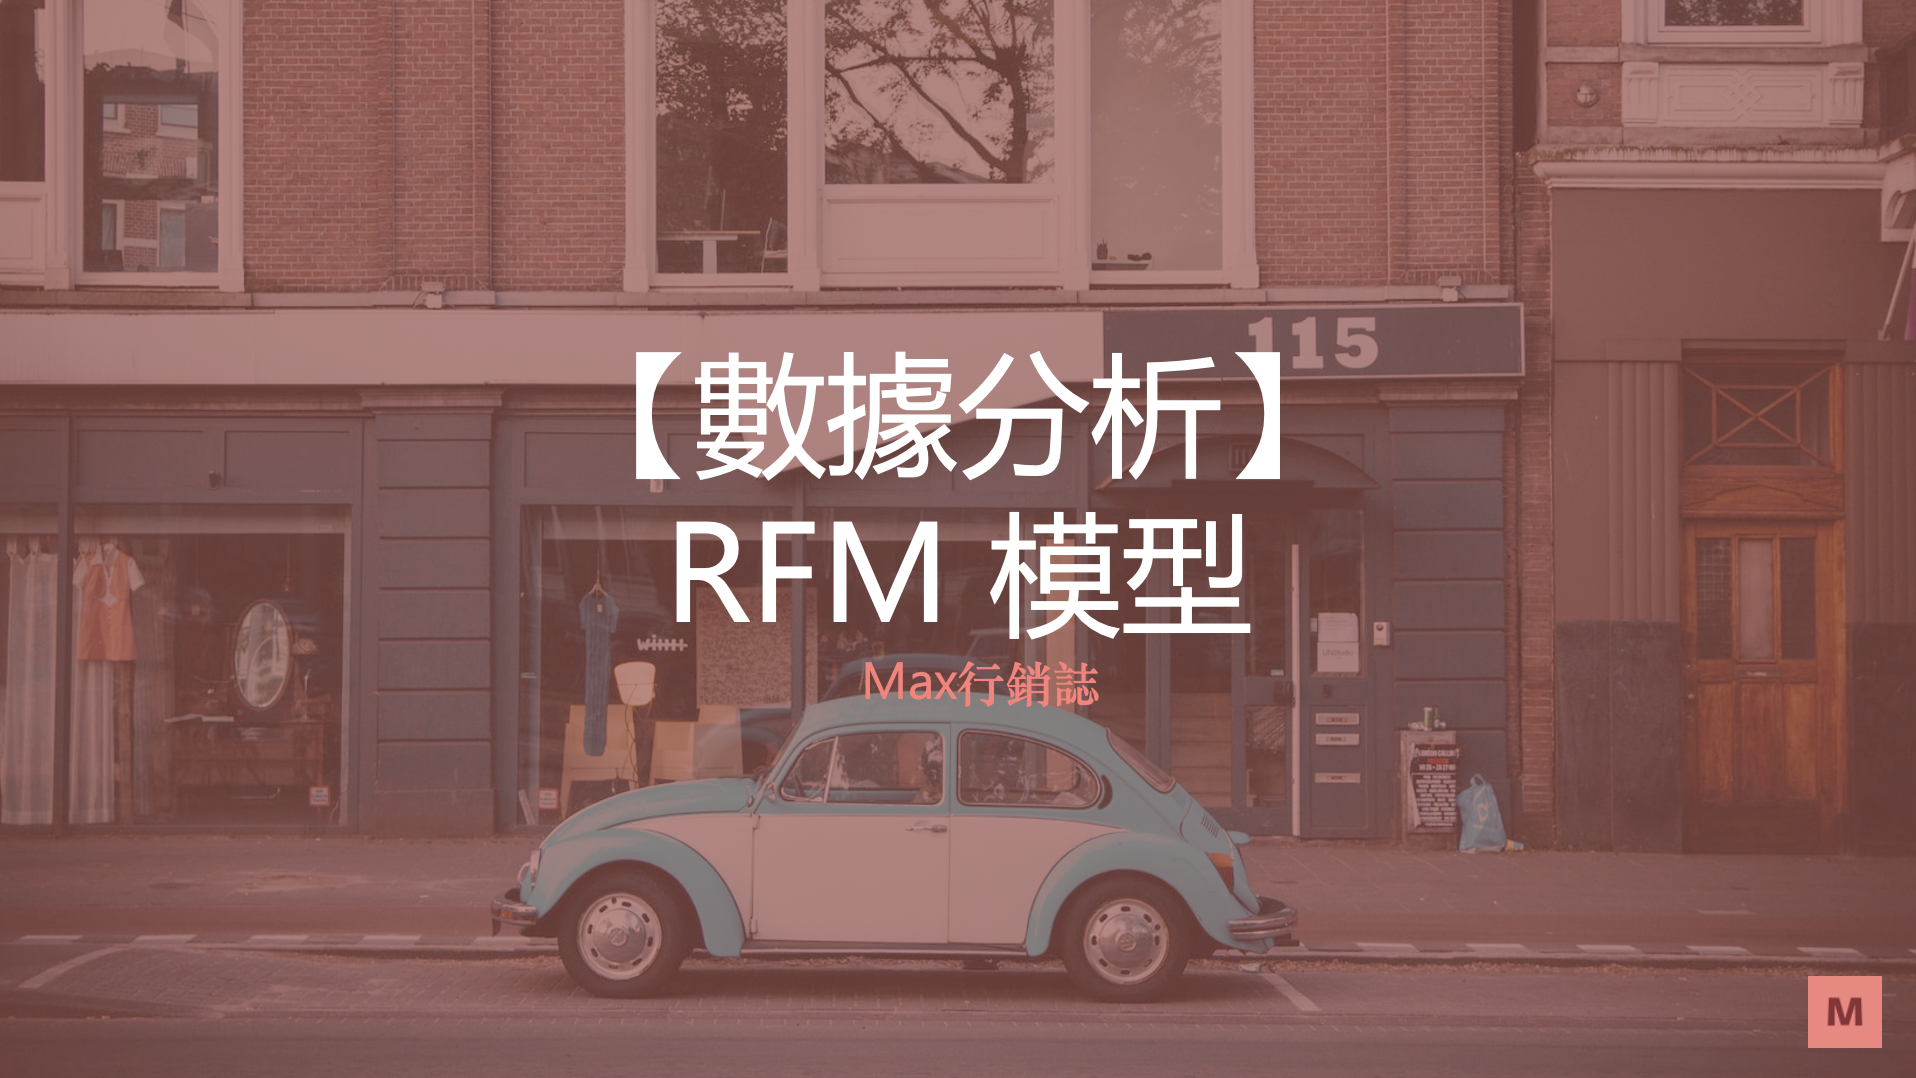 RFM模型_Max行銷誌